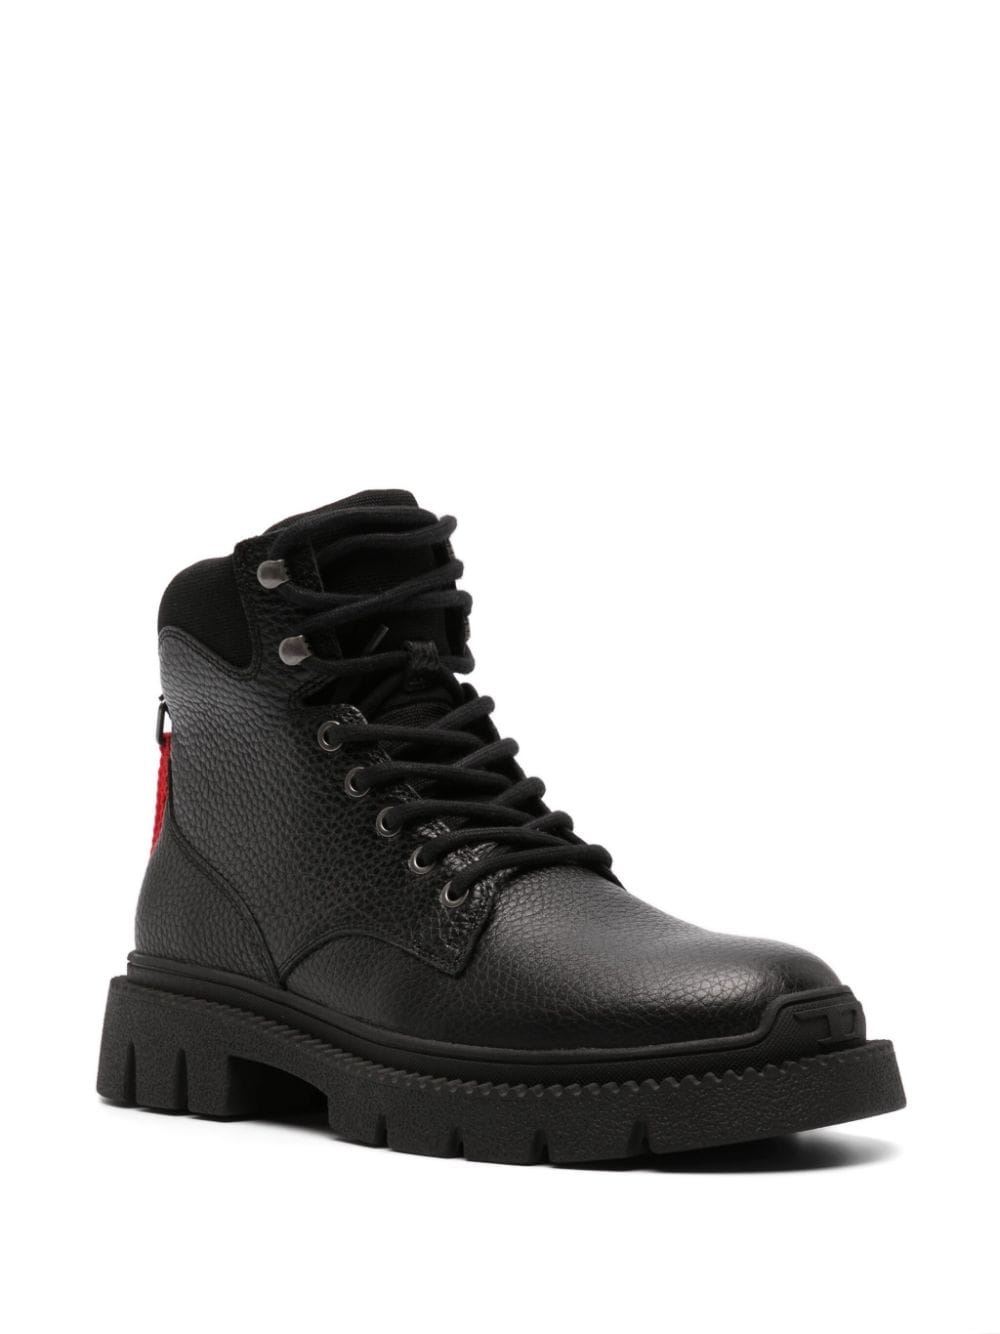 D-Troit leather boots - 2